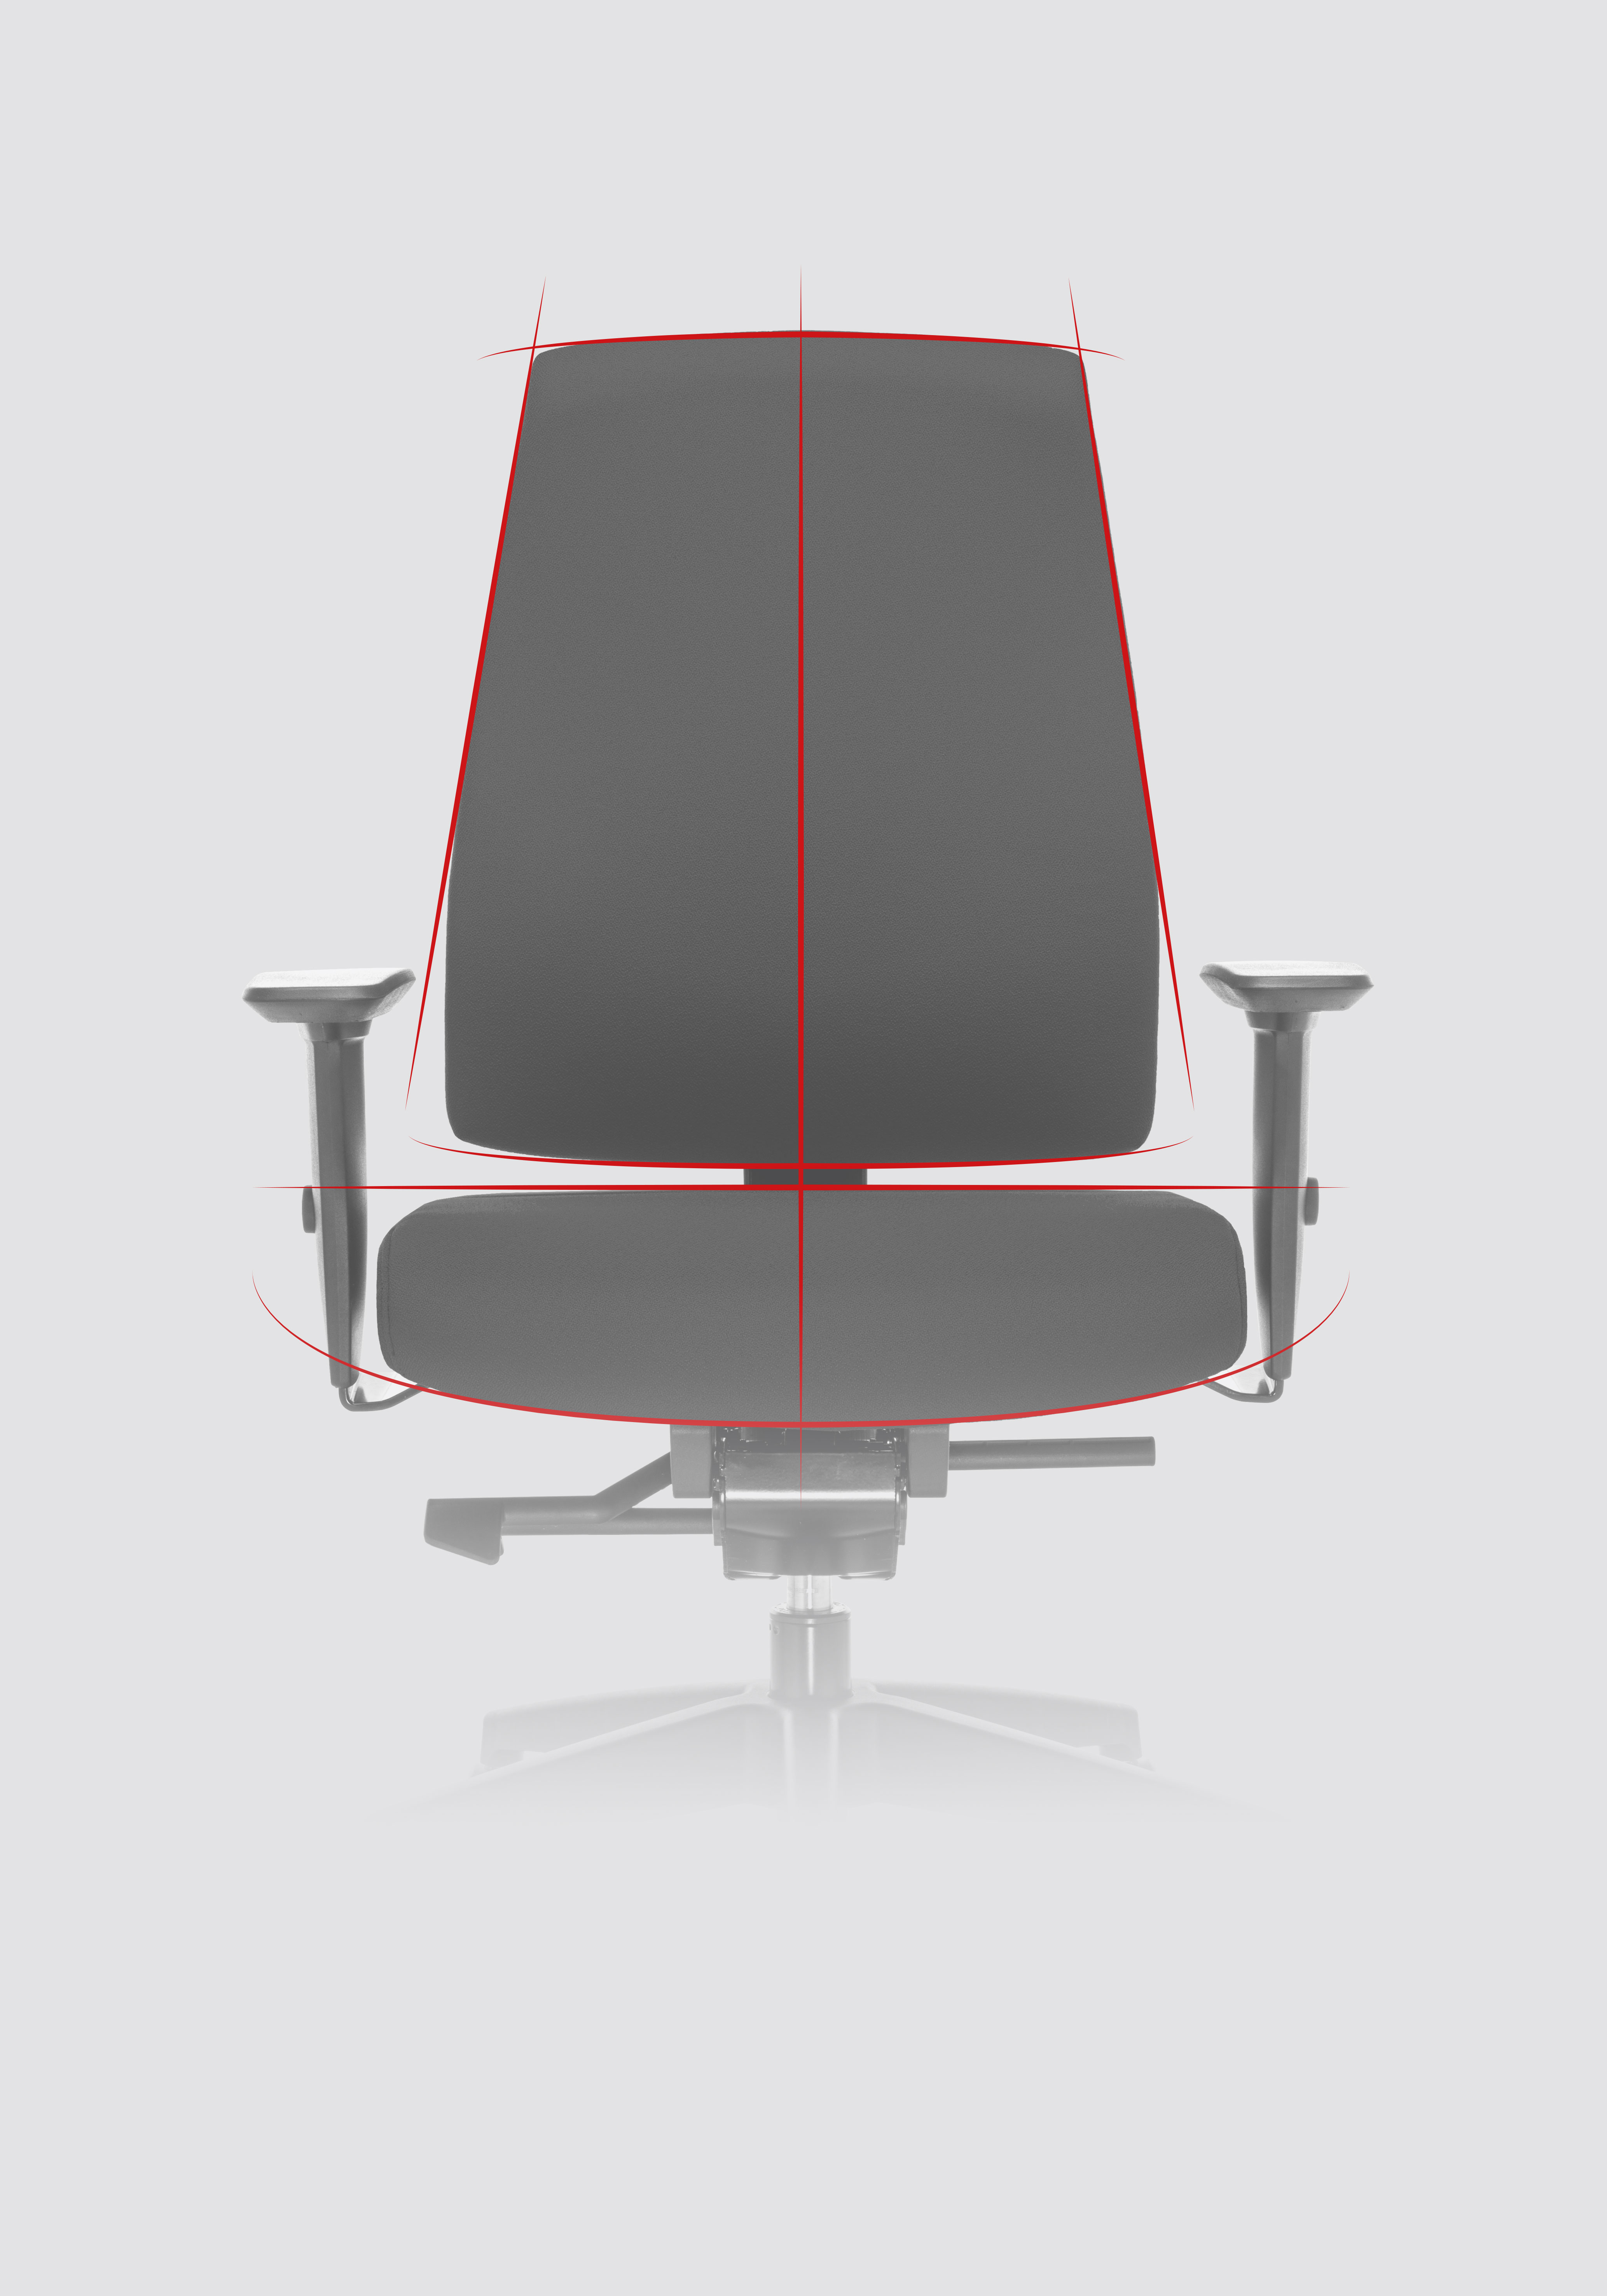 Sedia girevole Goal vista frontalmente con enfasi sui contorni della sedia da ufficio messi in evidenza attraverso linee dinamiche